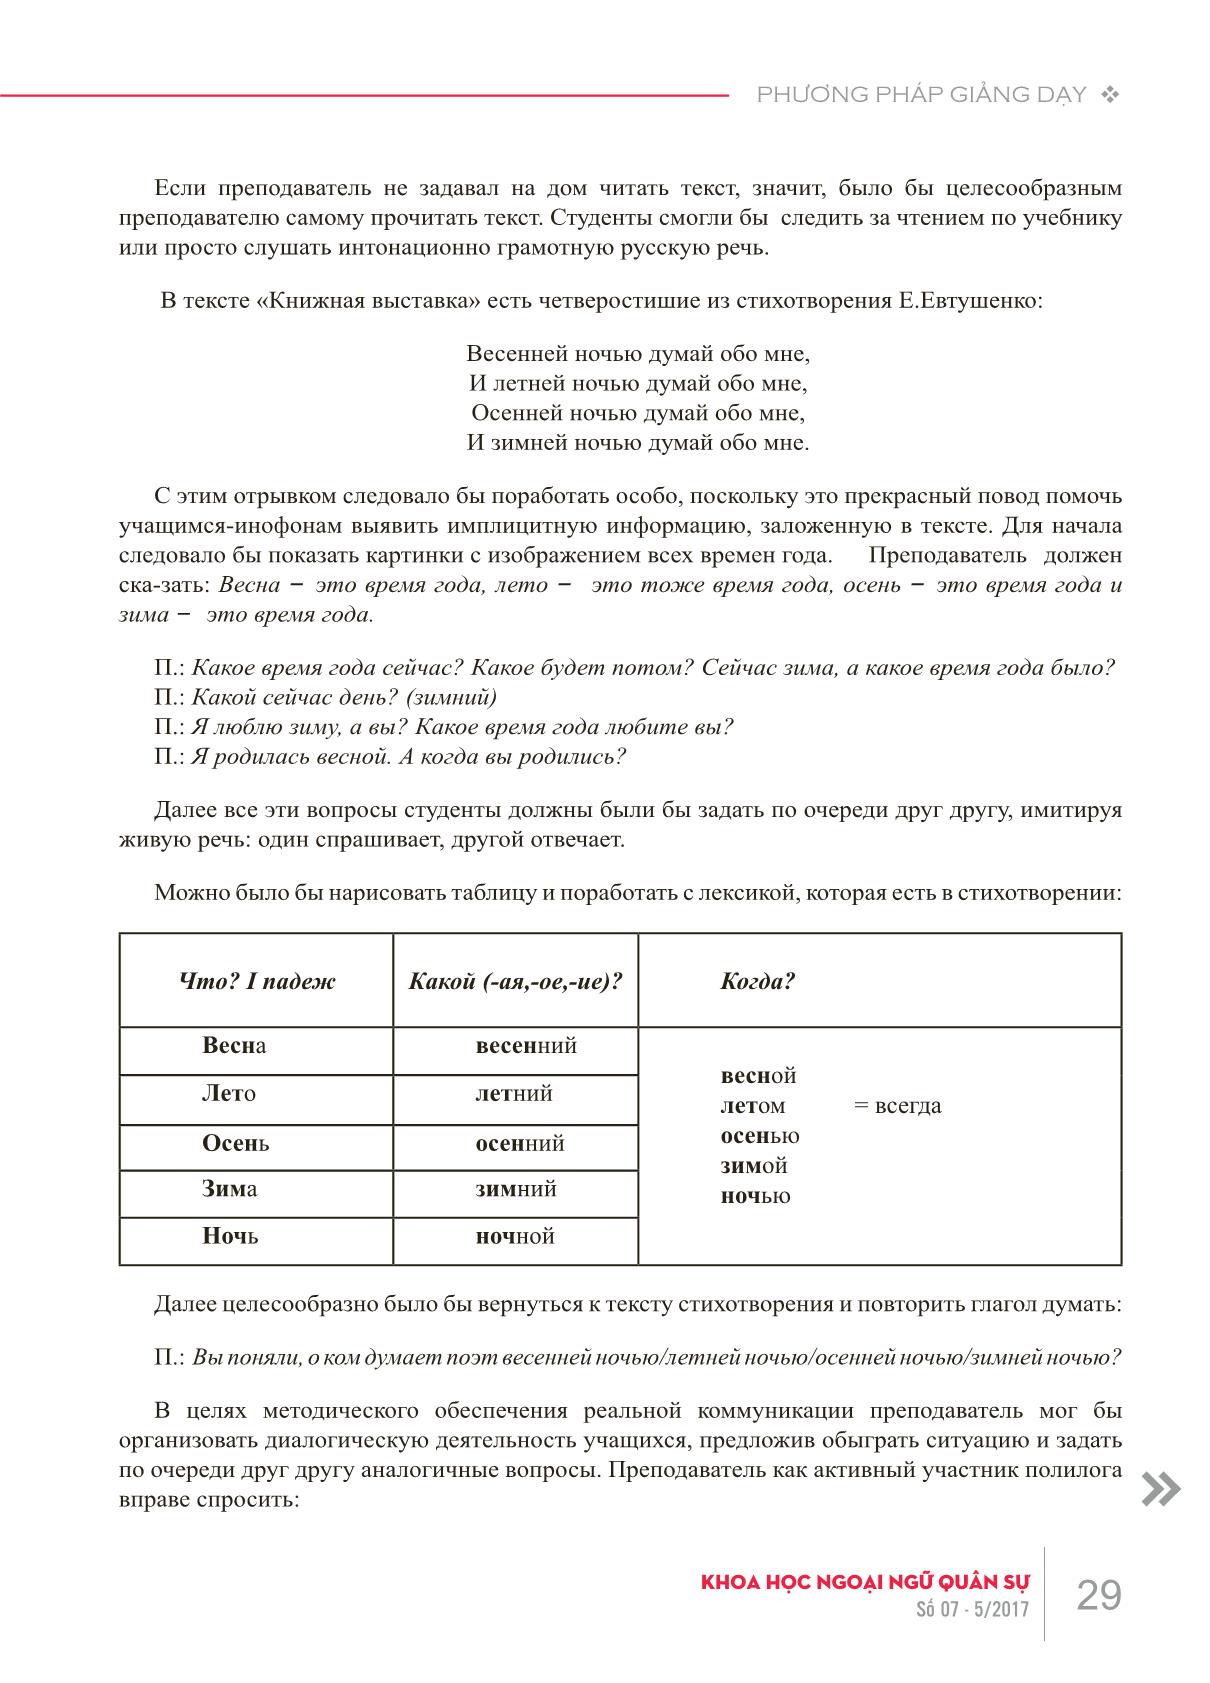 Các lỗi về phương pháp giảng dạy khi xử lý văn bản trong giờ dạy tiếng Nga như một ngoại ngữ trang 4